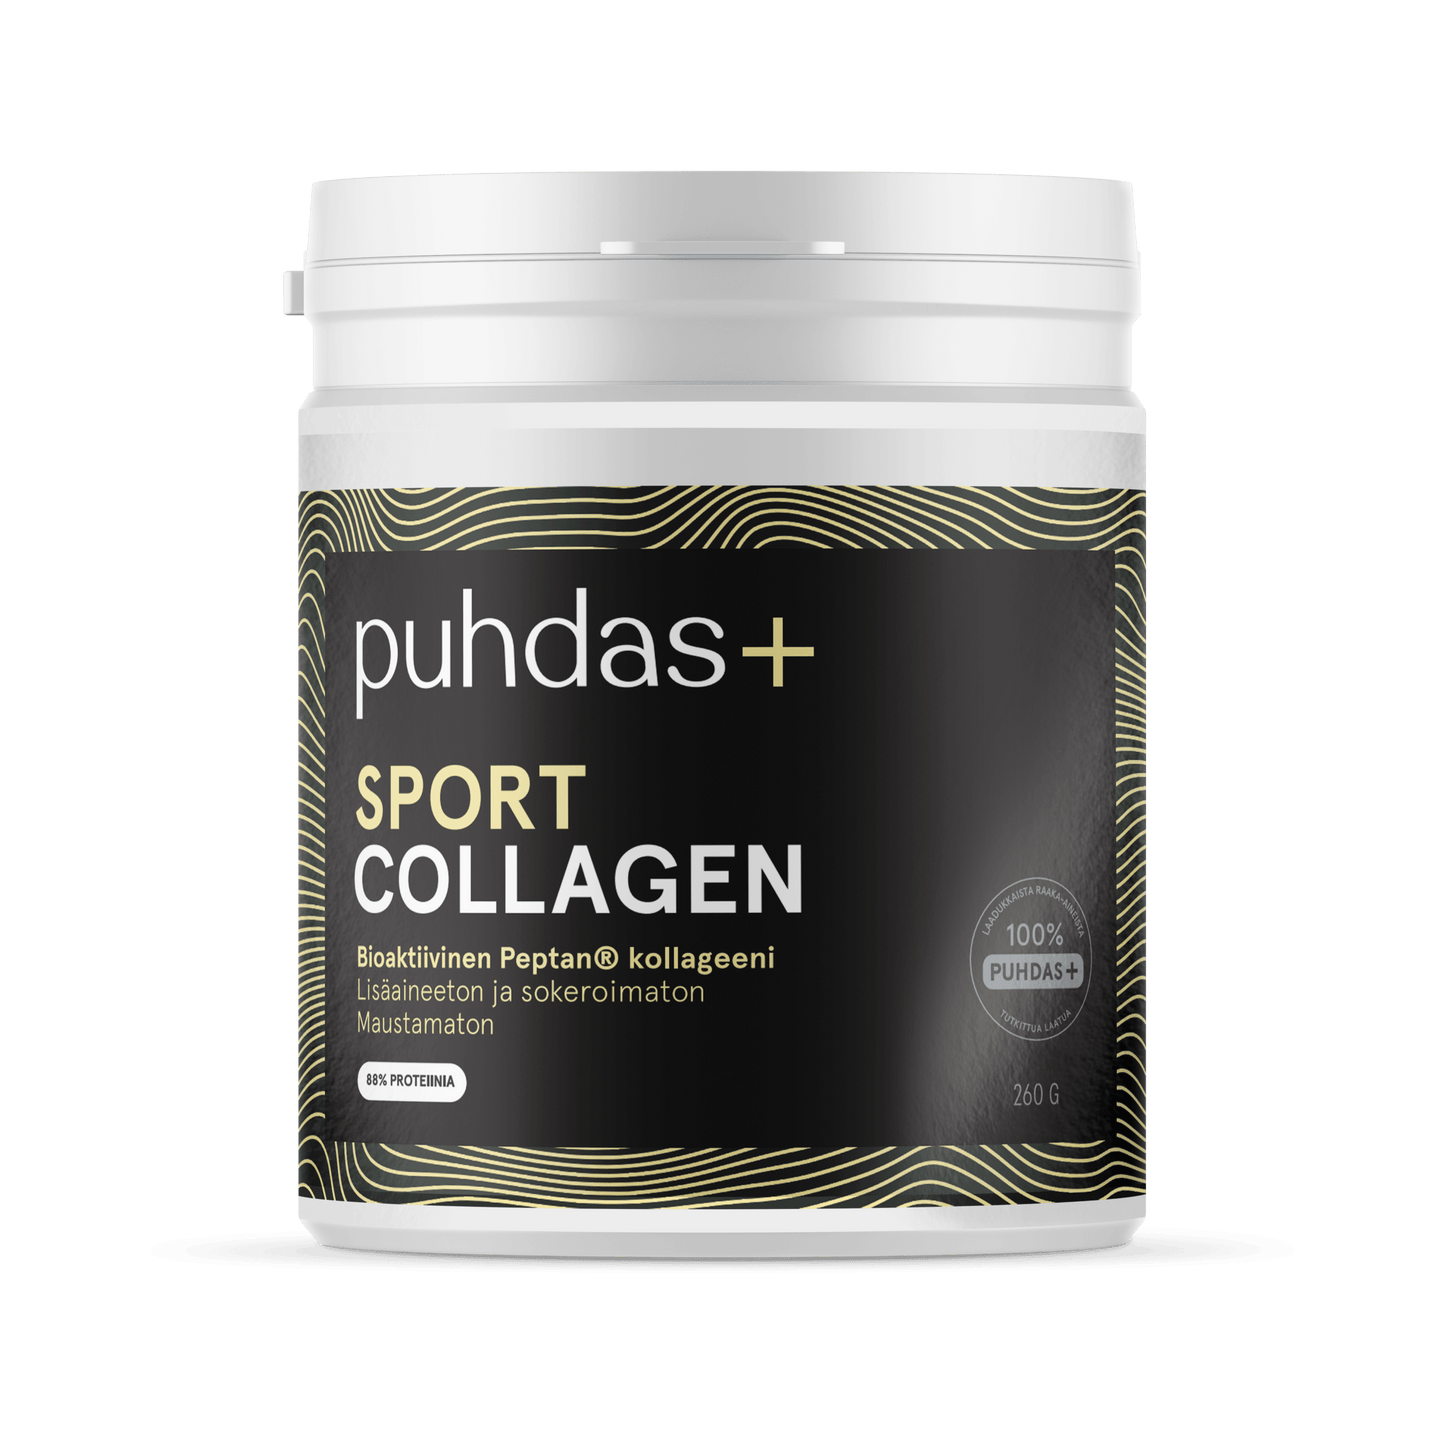 Puhdas+ Sport Collagen Hydrolysate